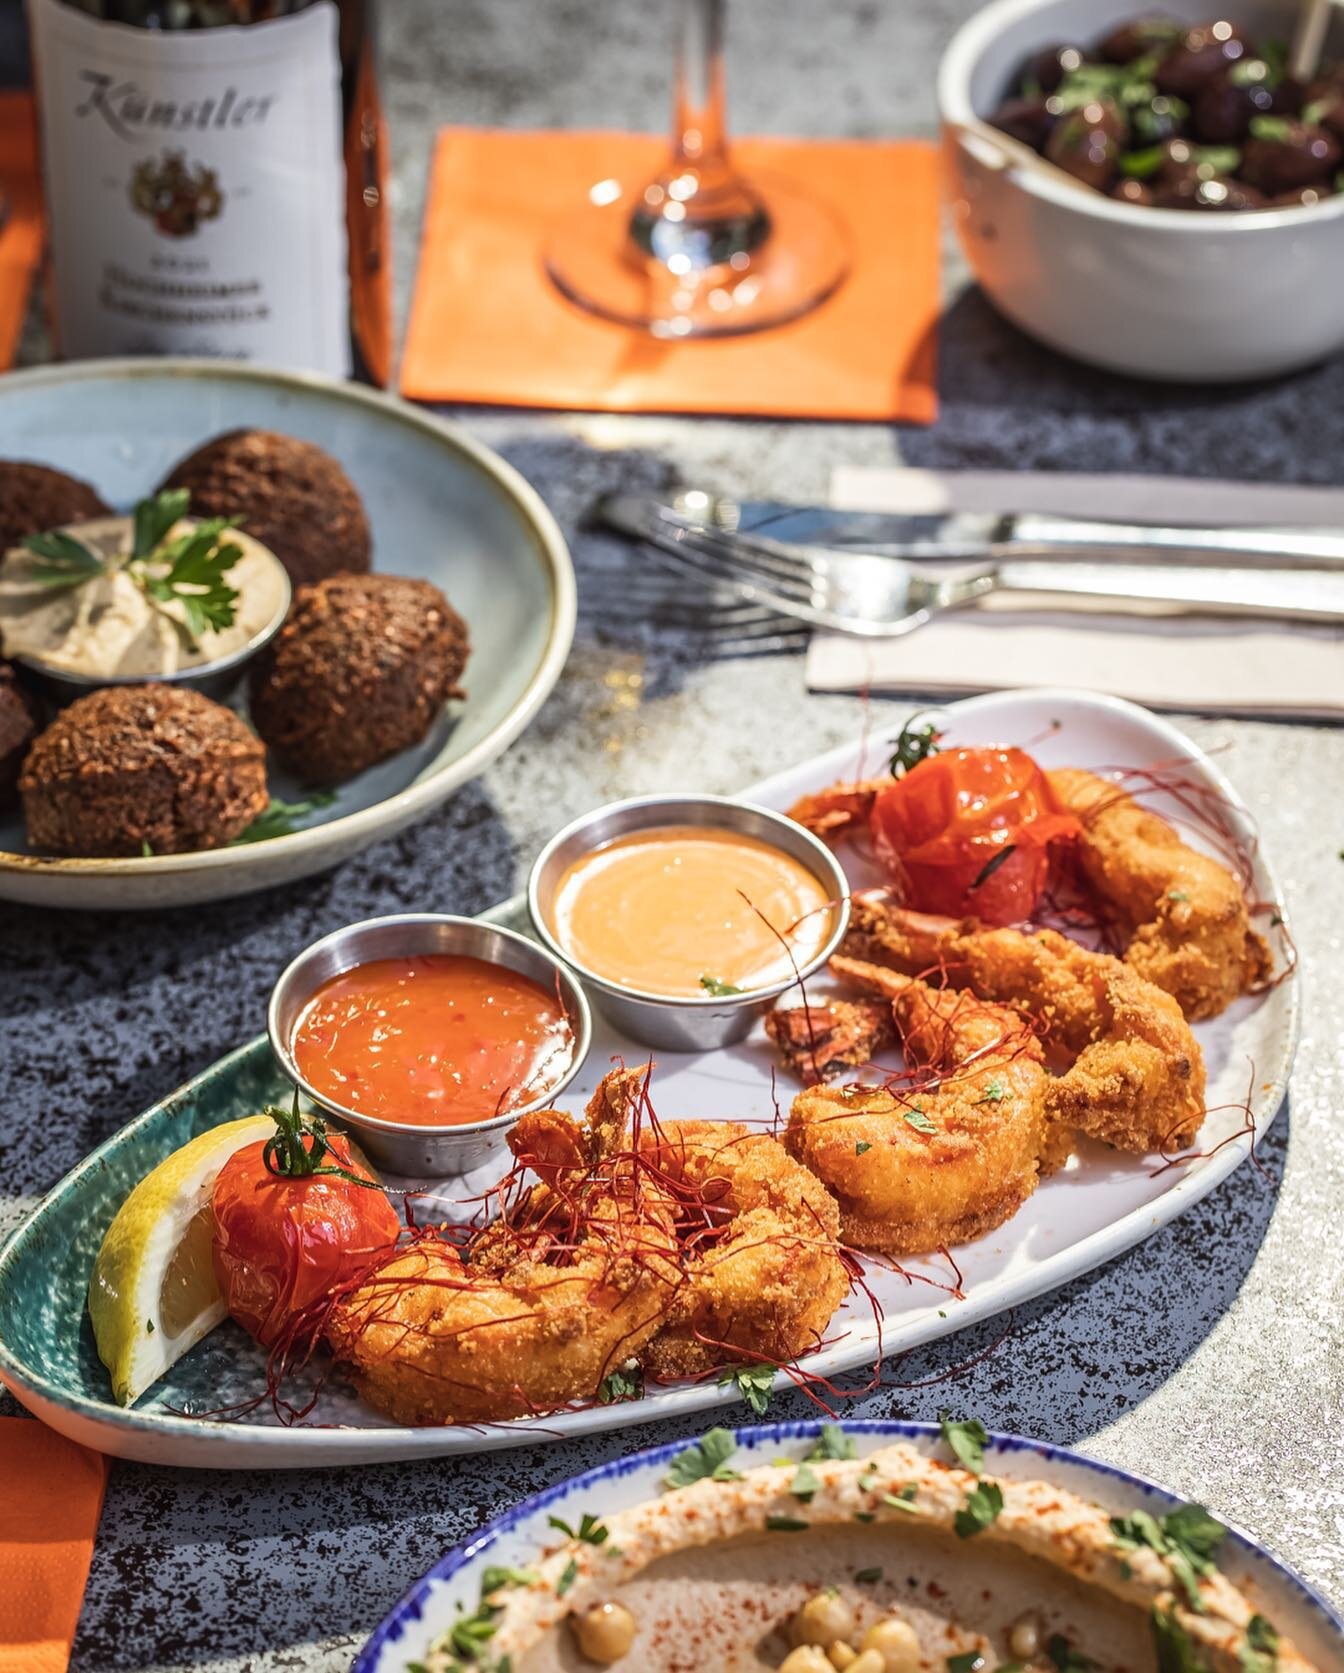 So crunchy and so delicious! 😍

Unsere frittierten Shrimps werden mit einigen Chilif&auml;den serviert und kommen gleich mit zwei leckeren Dips! Die darfst du dir nicht entgehen lassen. ✨

Besuch uns gerne und reserviere dir deinen Tisch ganz einfac